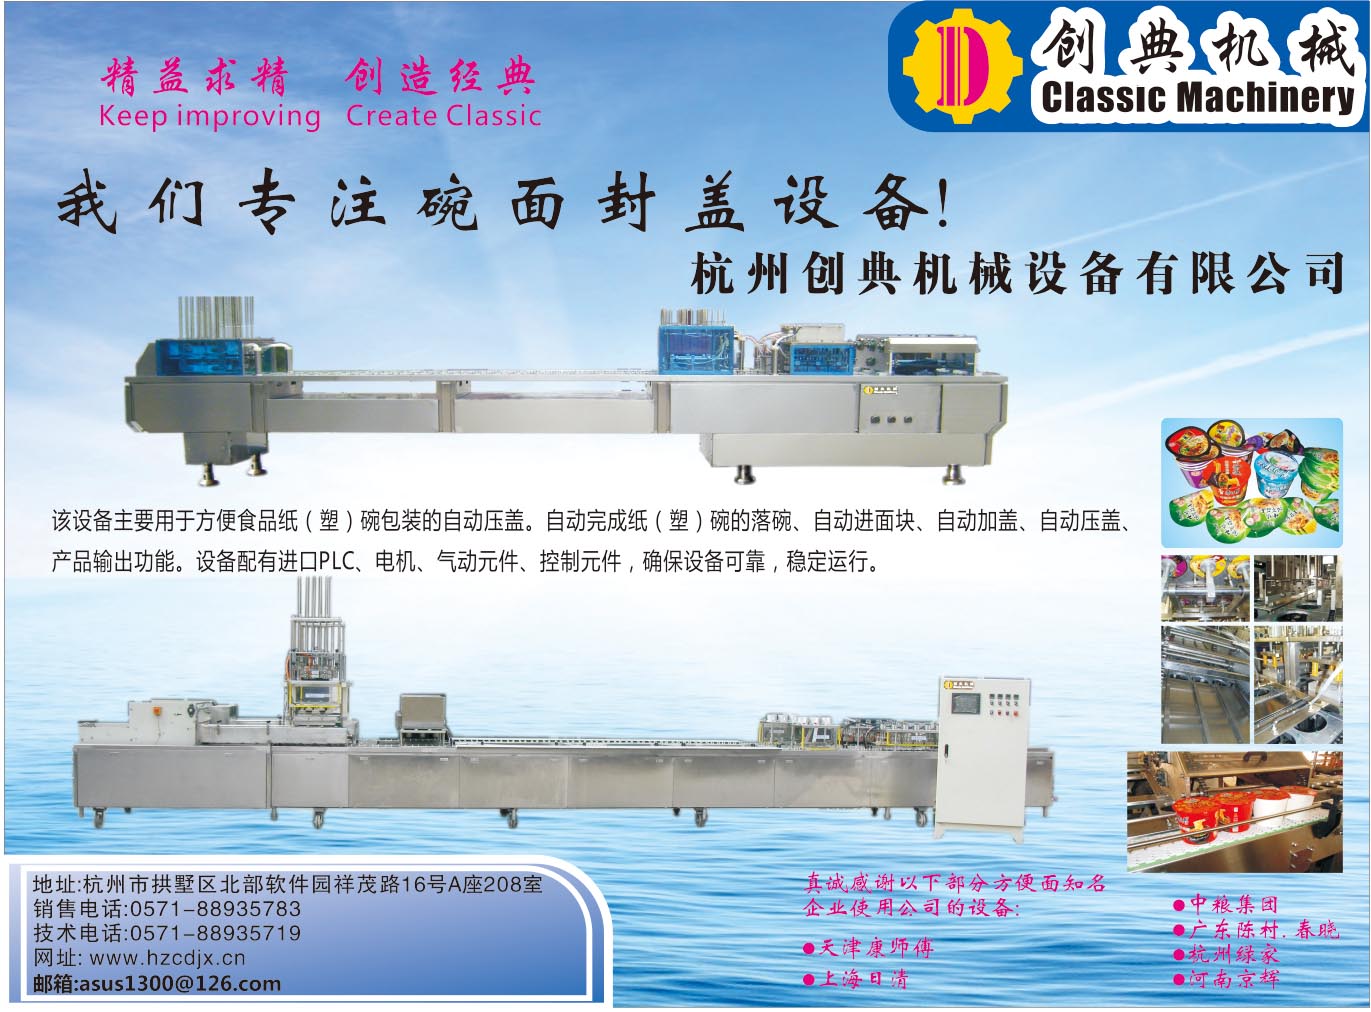 杭州创典机械设备有限公司